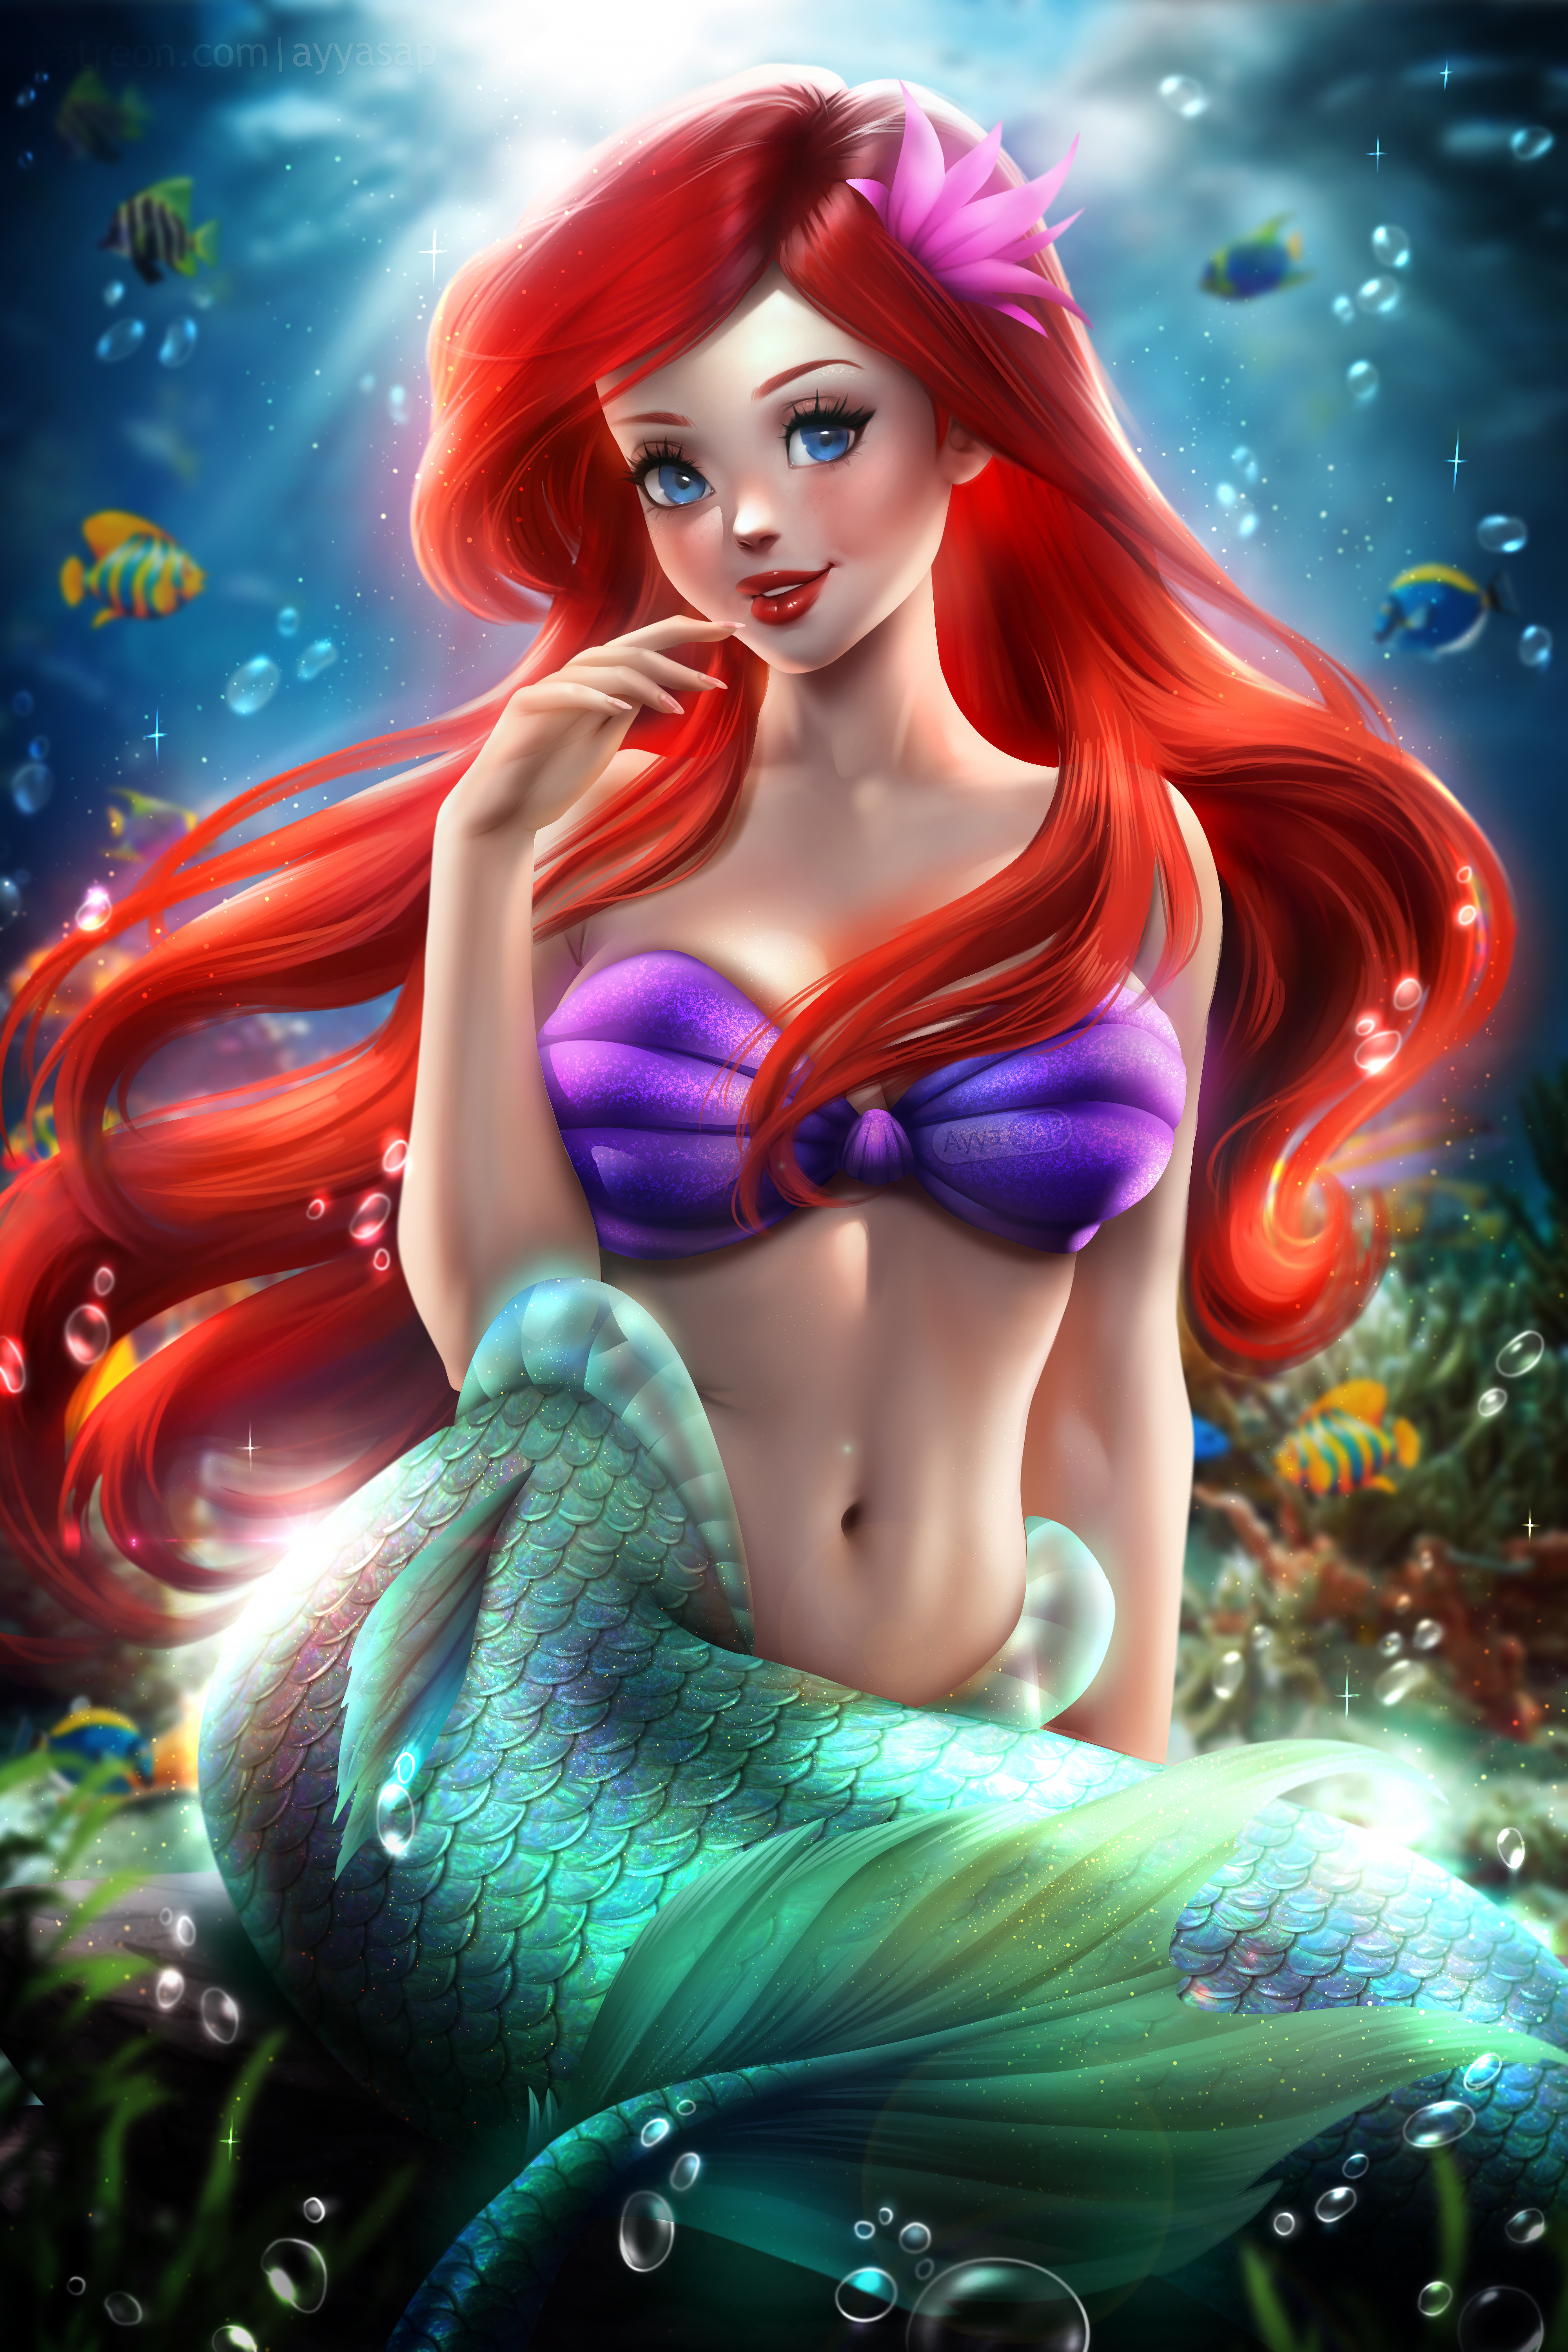 General 4000x6000 Disney Disney princesses illustration artwork digital art fan art Ayya Saparniyazova The Little Mermaid redhead belly drawing Ariel (Disney)